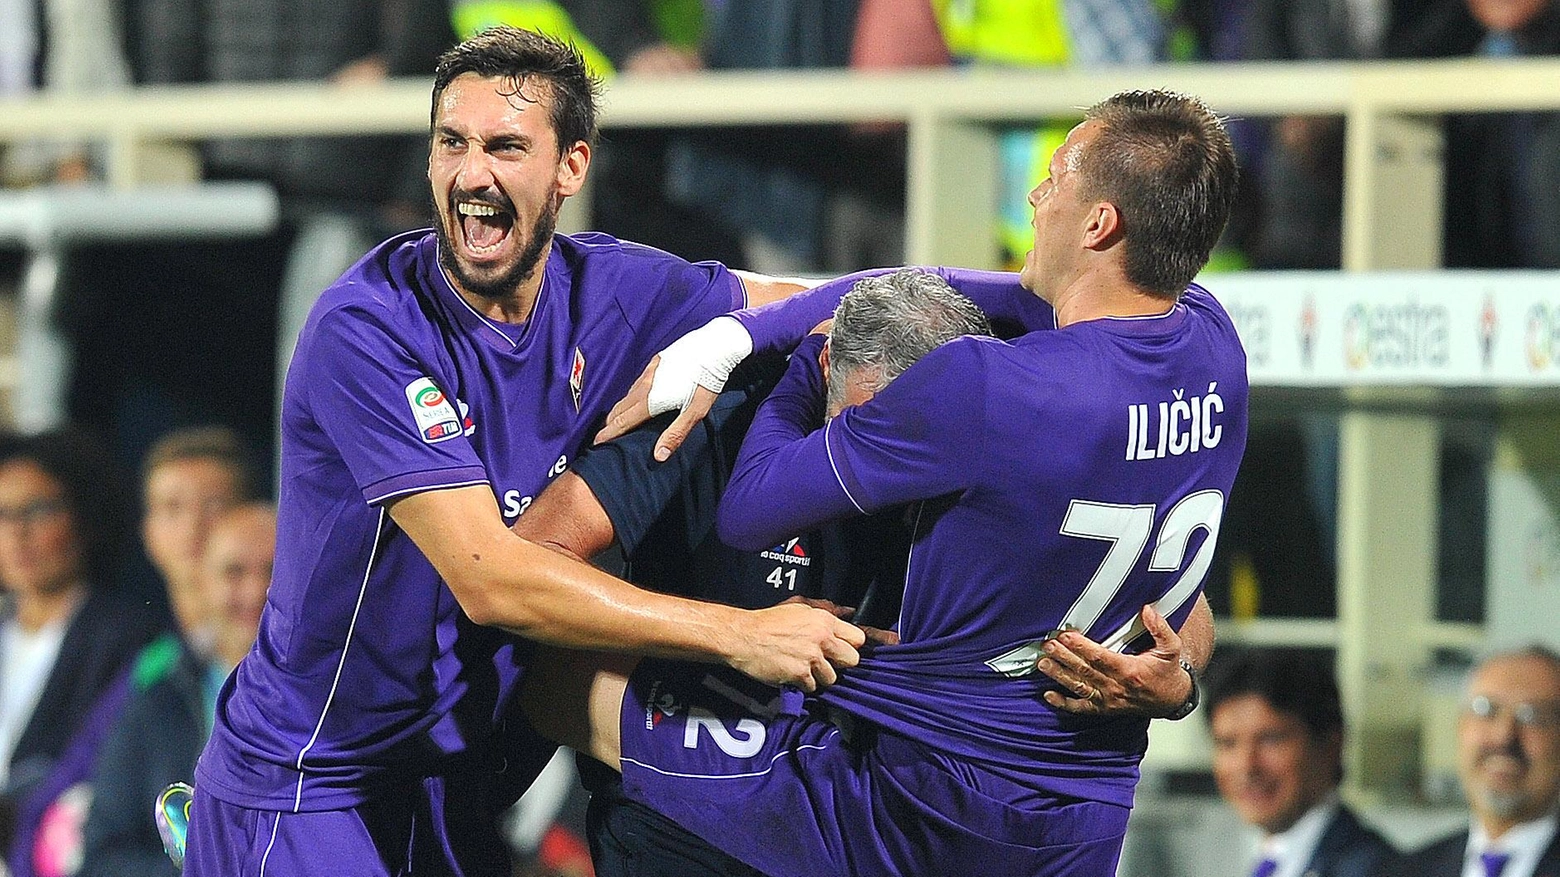 Il capitano della Fiorentina, Davide Astori, festeggia il gol di un compagno